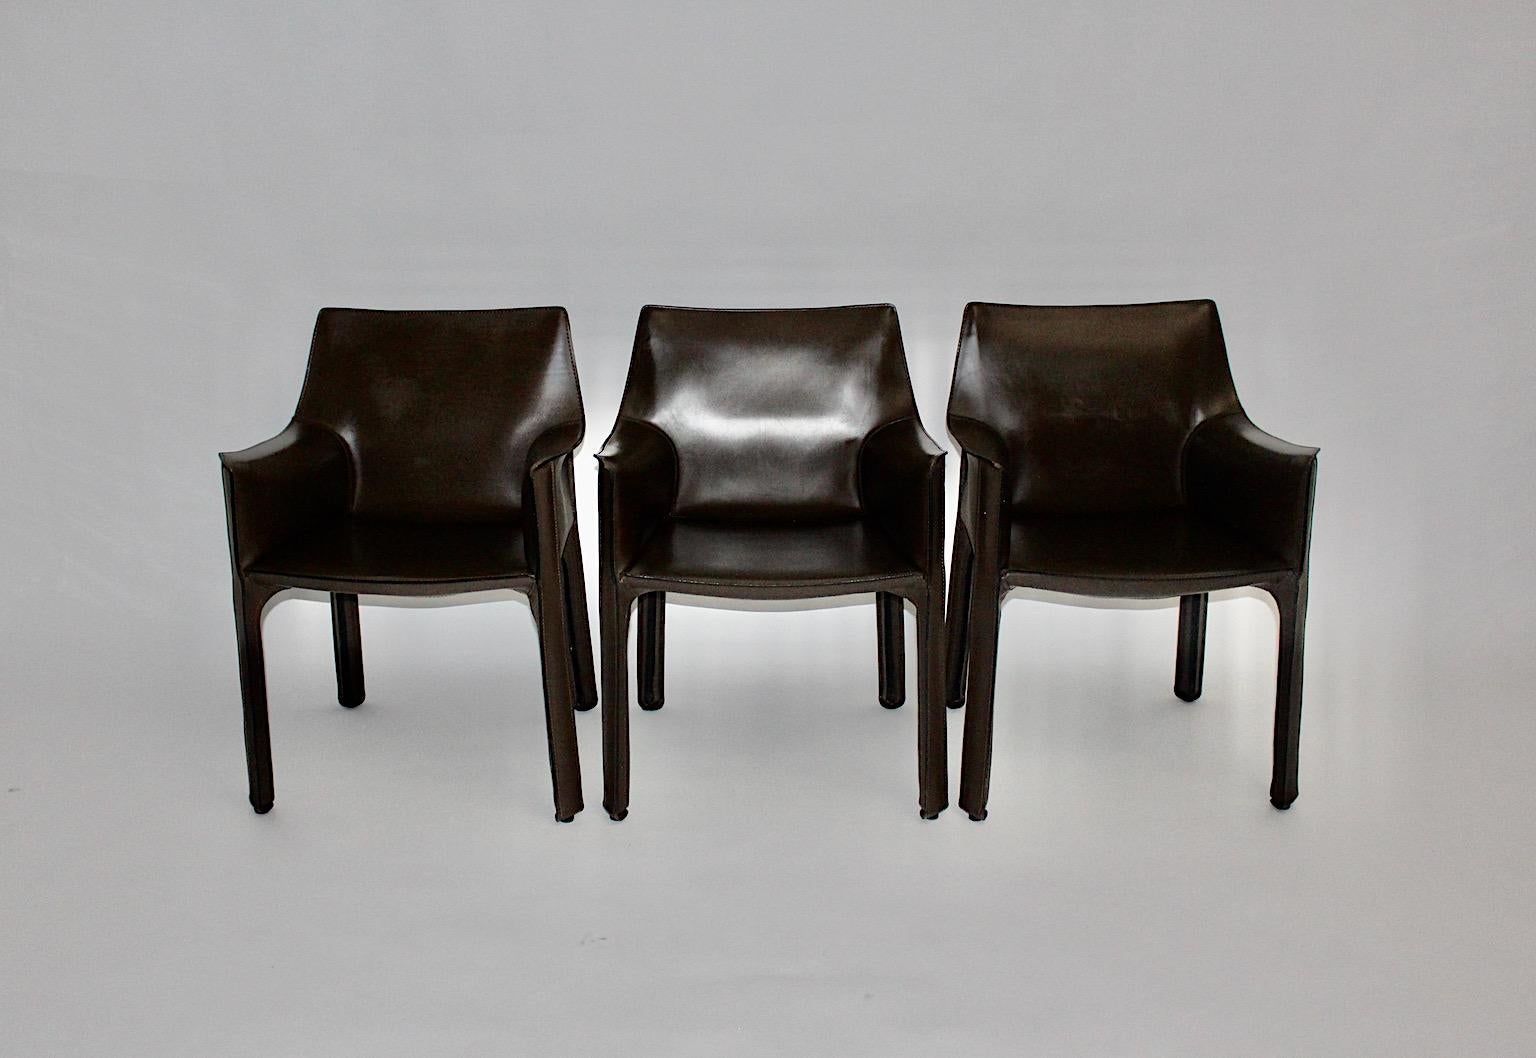 Mario Bellini Vintage Satz von sechs Stühlen oder Sesseln Mod. Cab 413 aus hochwertigem Leder in schokoladenbrauner Farbe Italien 1970er Jahre. Ausgeführt von Cassina, 1990er Jahre, Italien.
Der stabile, geformte Metallrahmen wurde mit schönem,